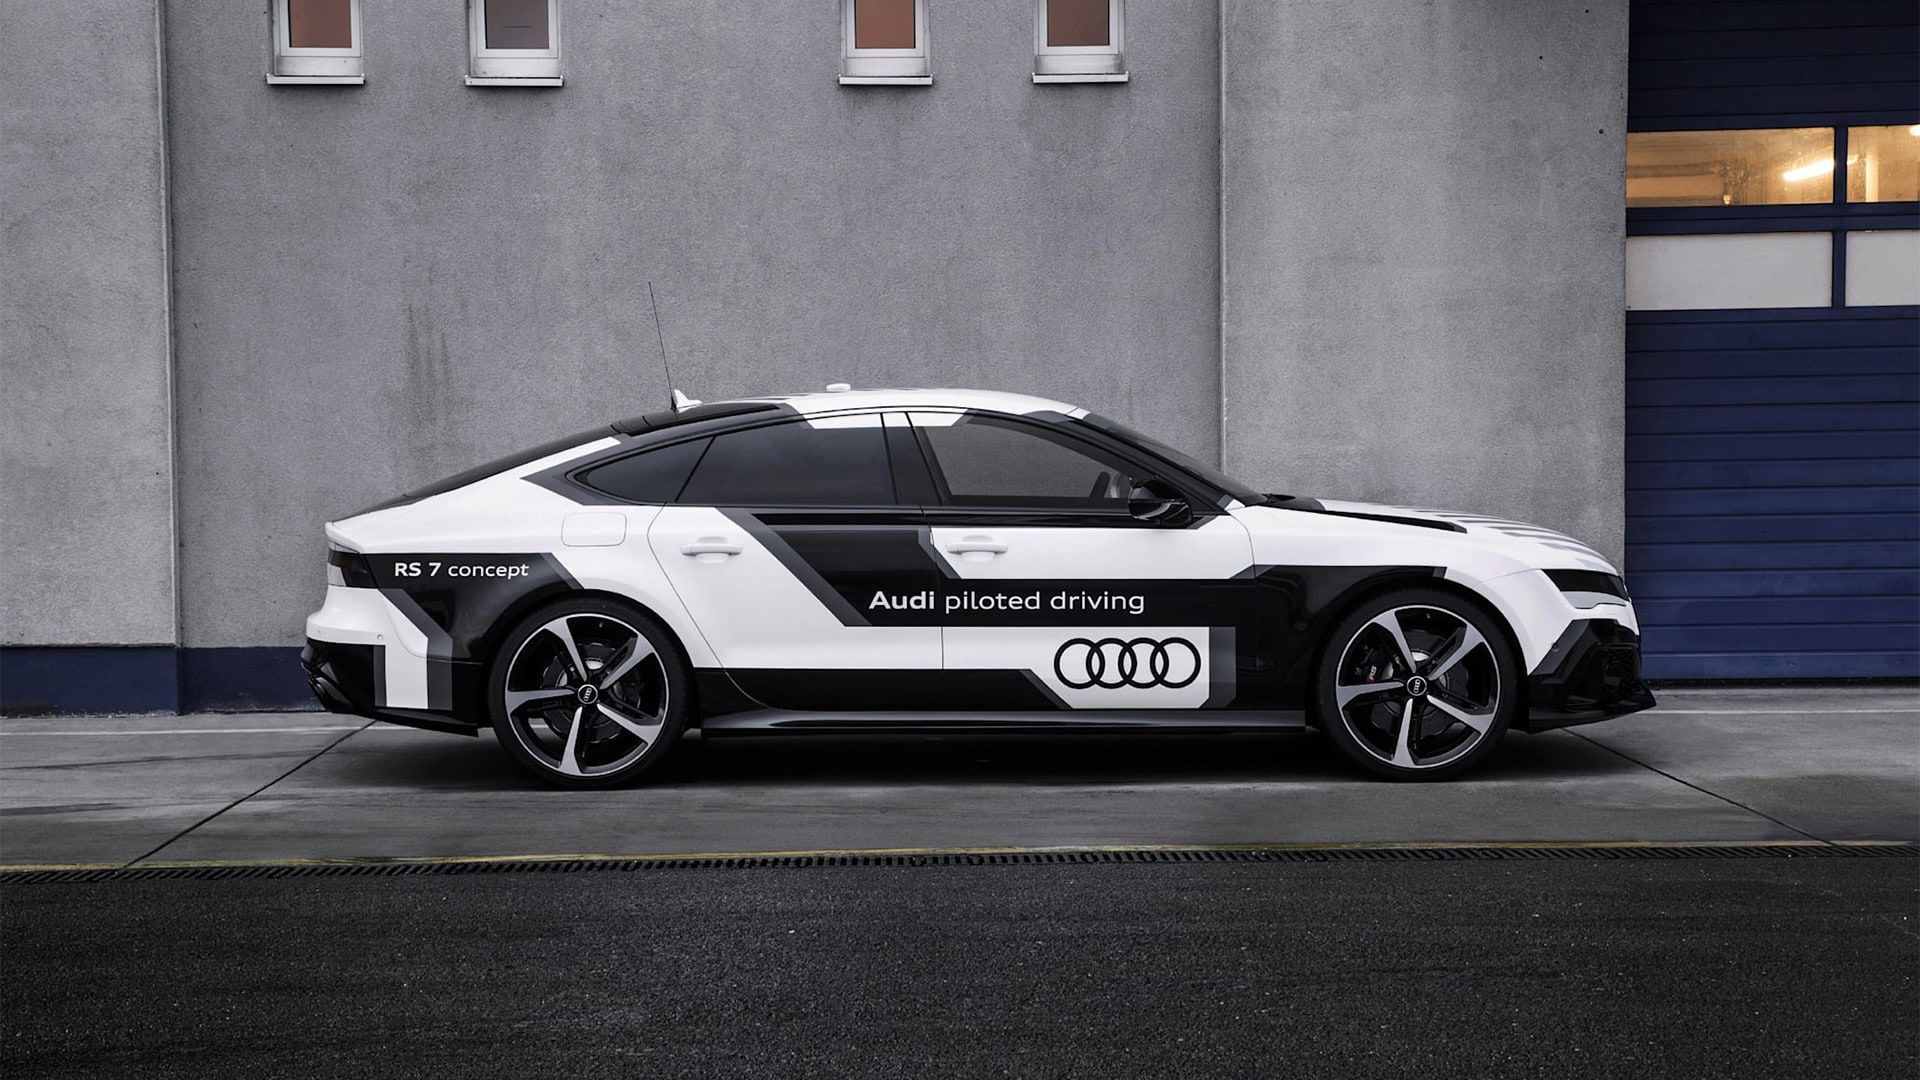 Audi RS 7 pilot sürüş concept: 